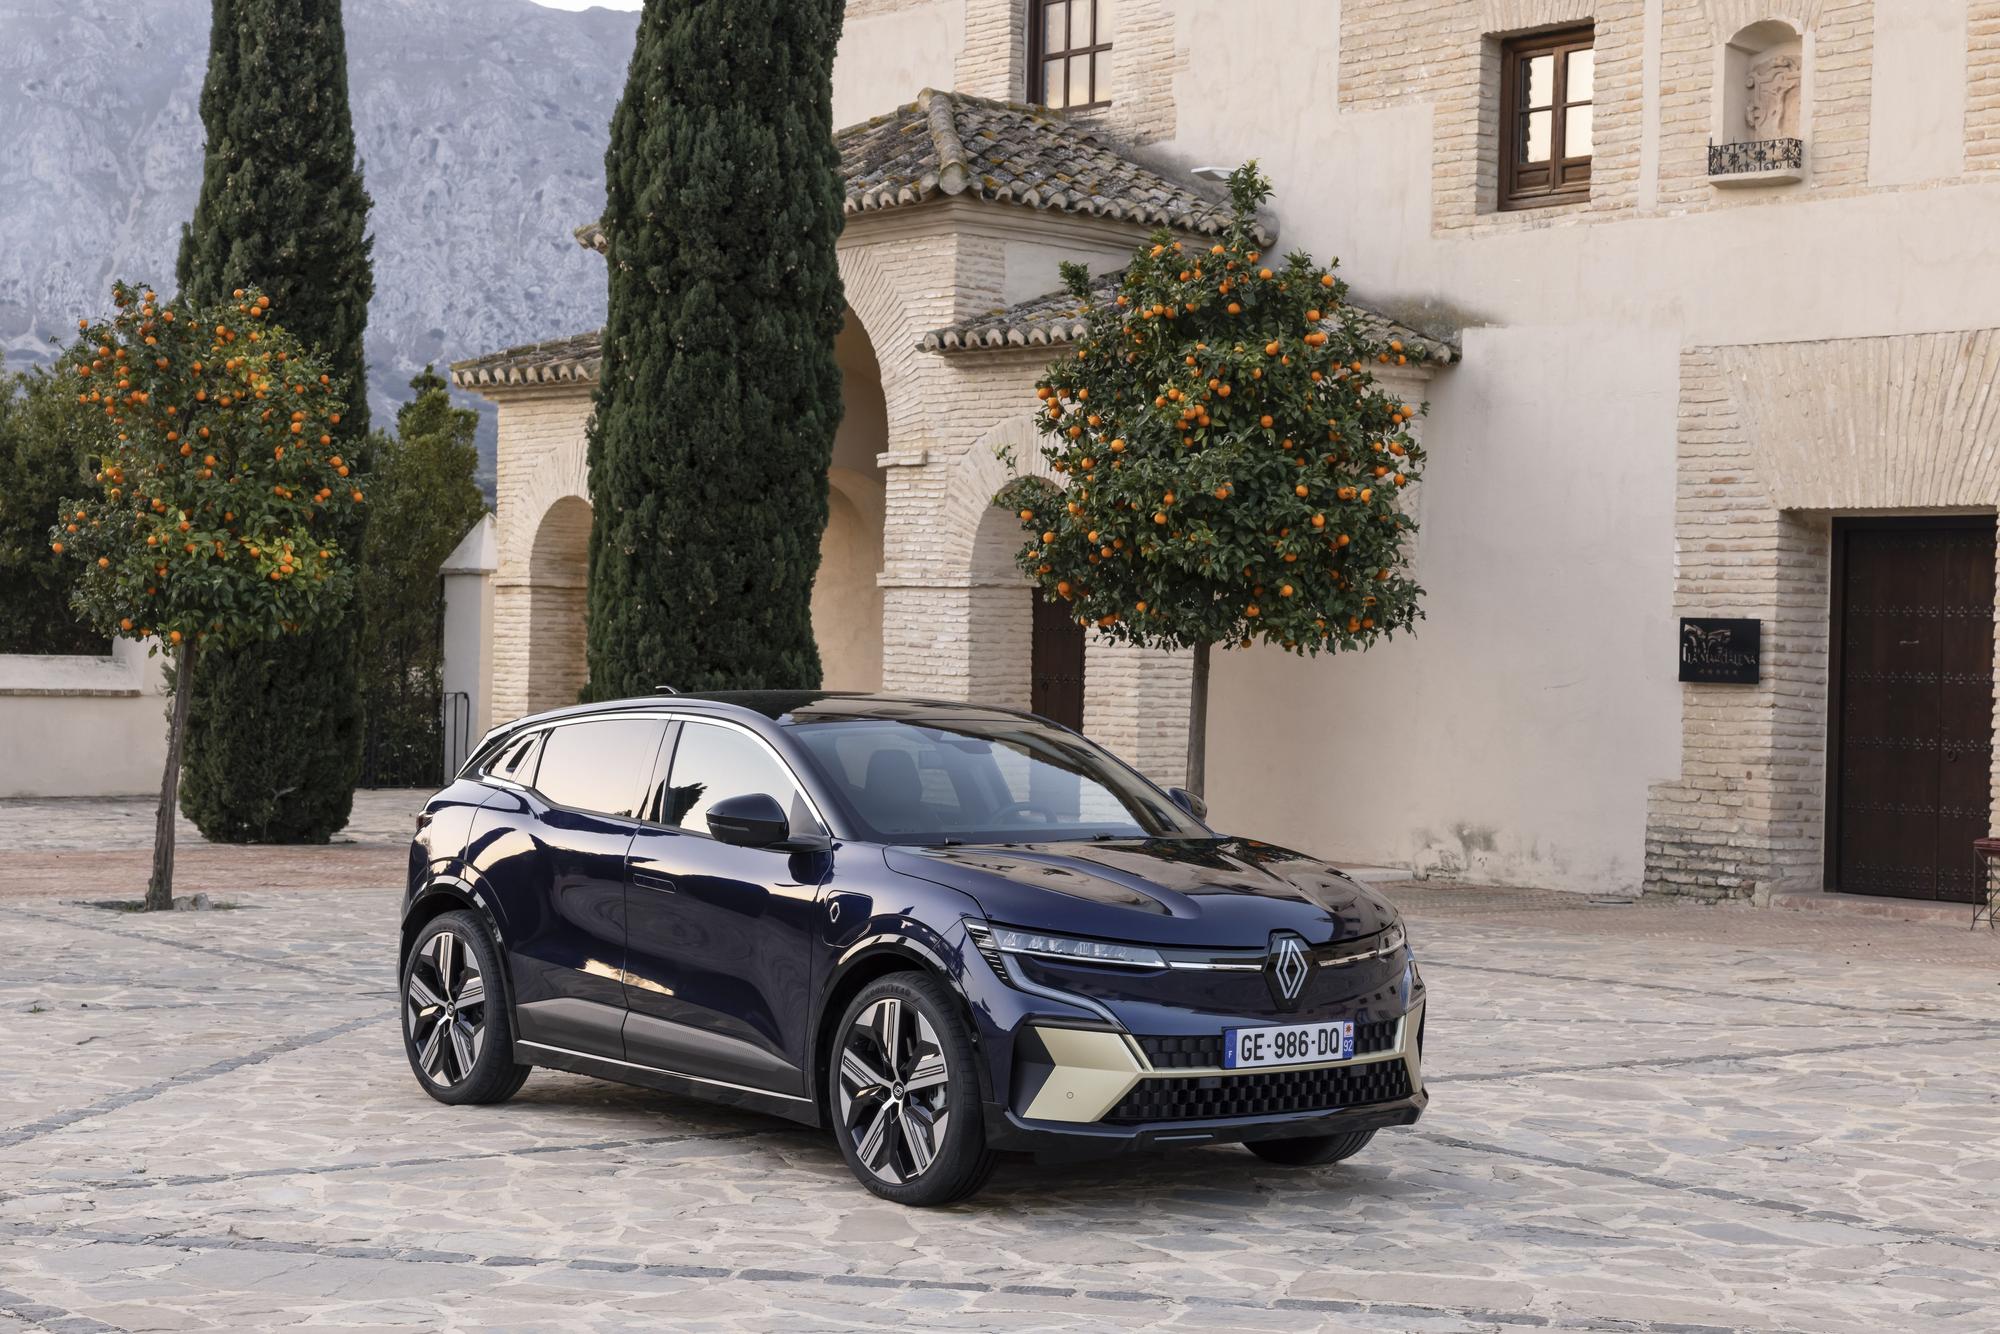 Llega el nuevo Renault Megane 100% eléctrico a Mallorca  por sólo 299 euros al mes